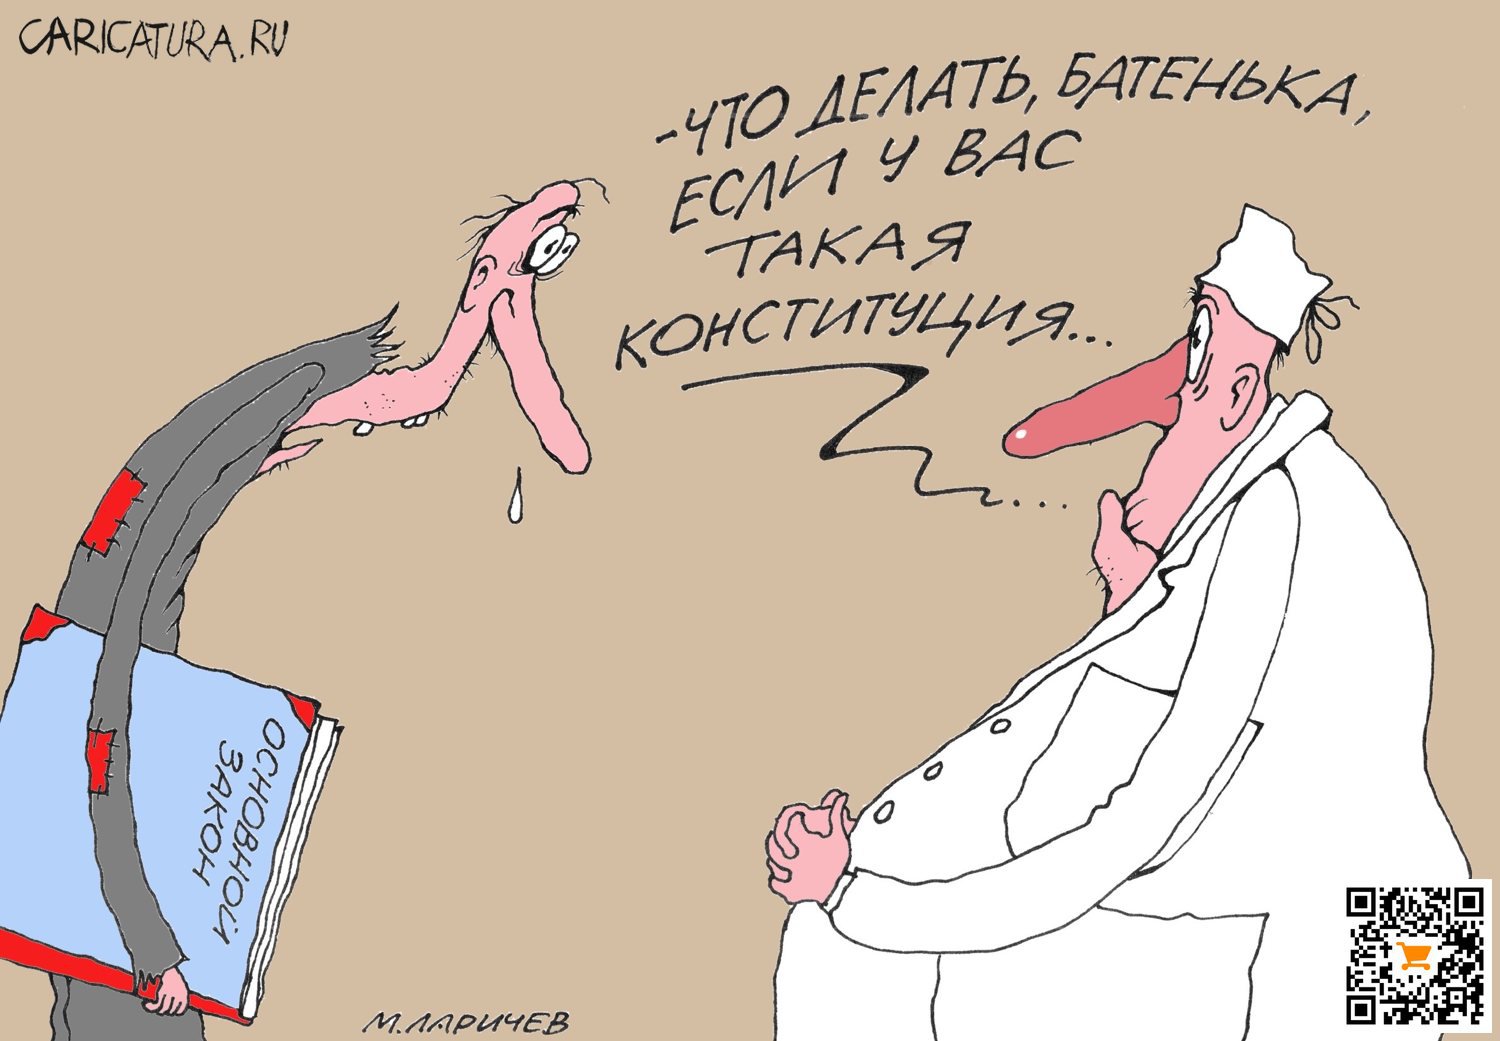 Карикатура "Что делать...", Михаил Ларичев